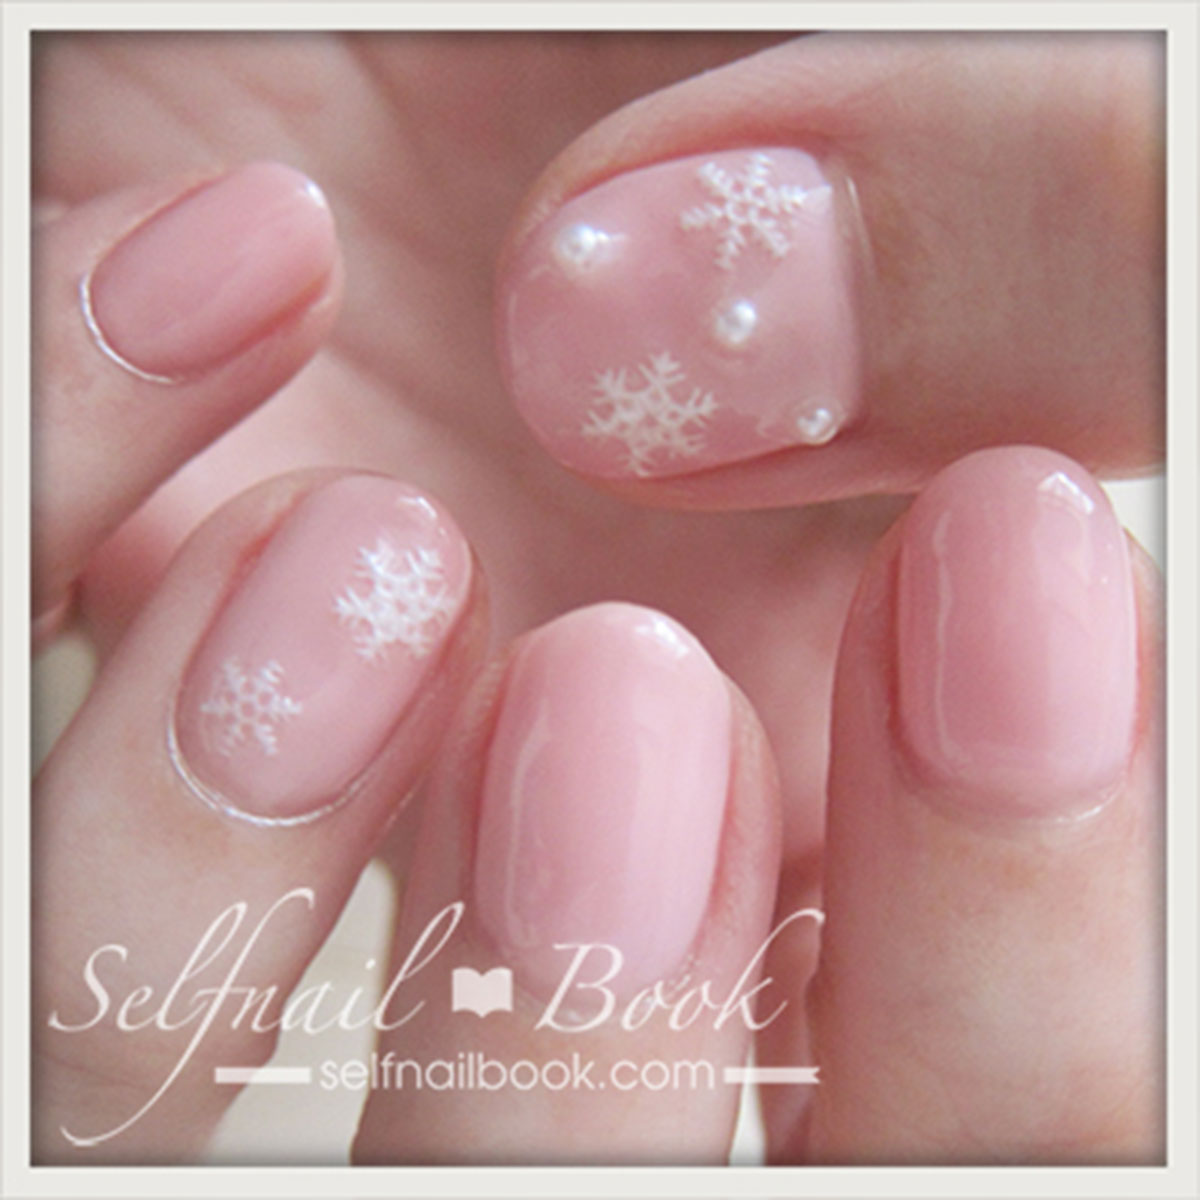 冬のネイルデザイン ピンク 雪の結晶 パールでかわいさ3倍 セルフネイラー向けジェルネイルbook